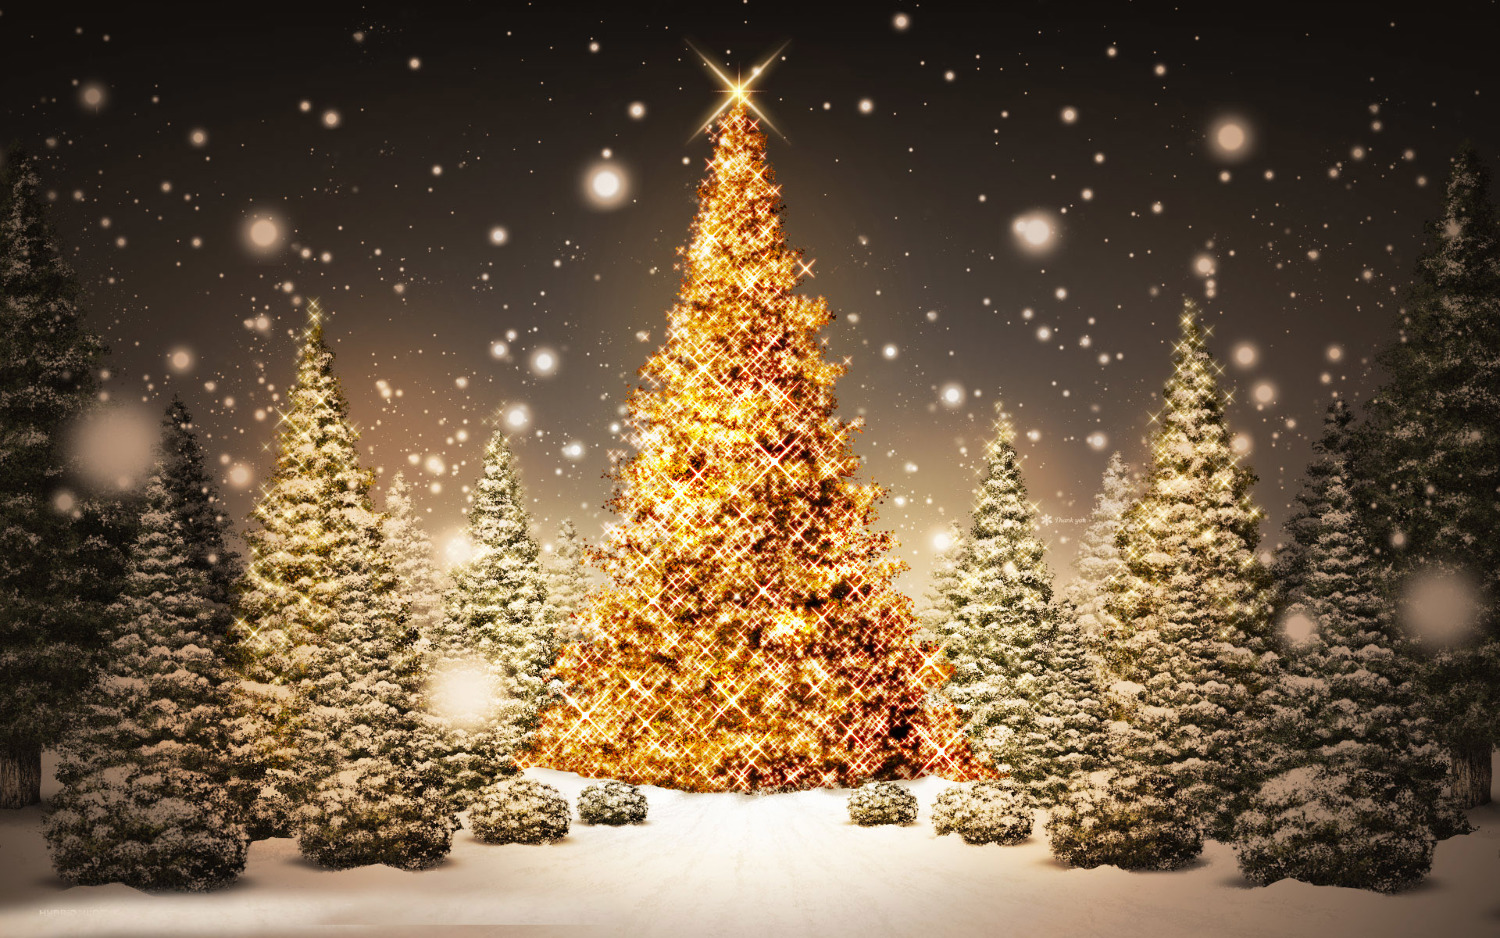 행복한 크리스마스 배경 화면,크리스마스 트리,나무,크리스마스 장식,크리스마스 이브,크리스마스 조명